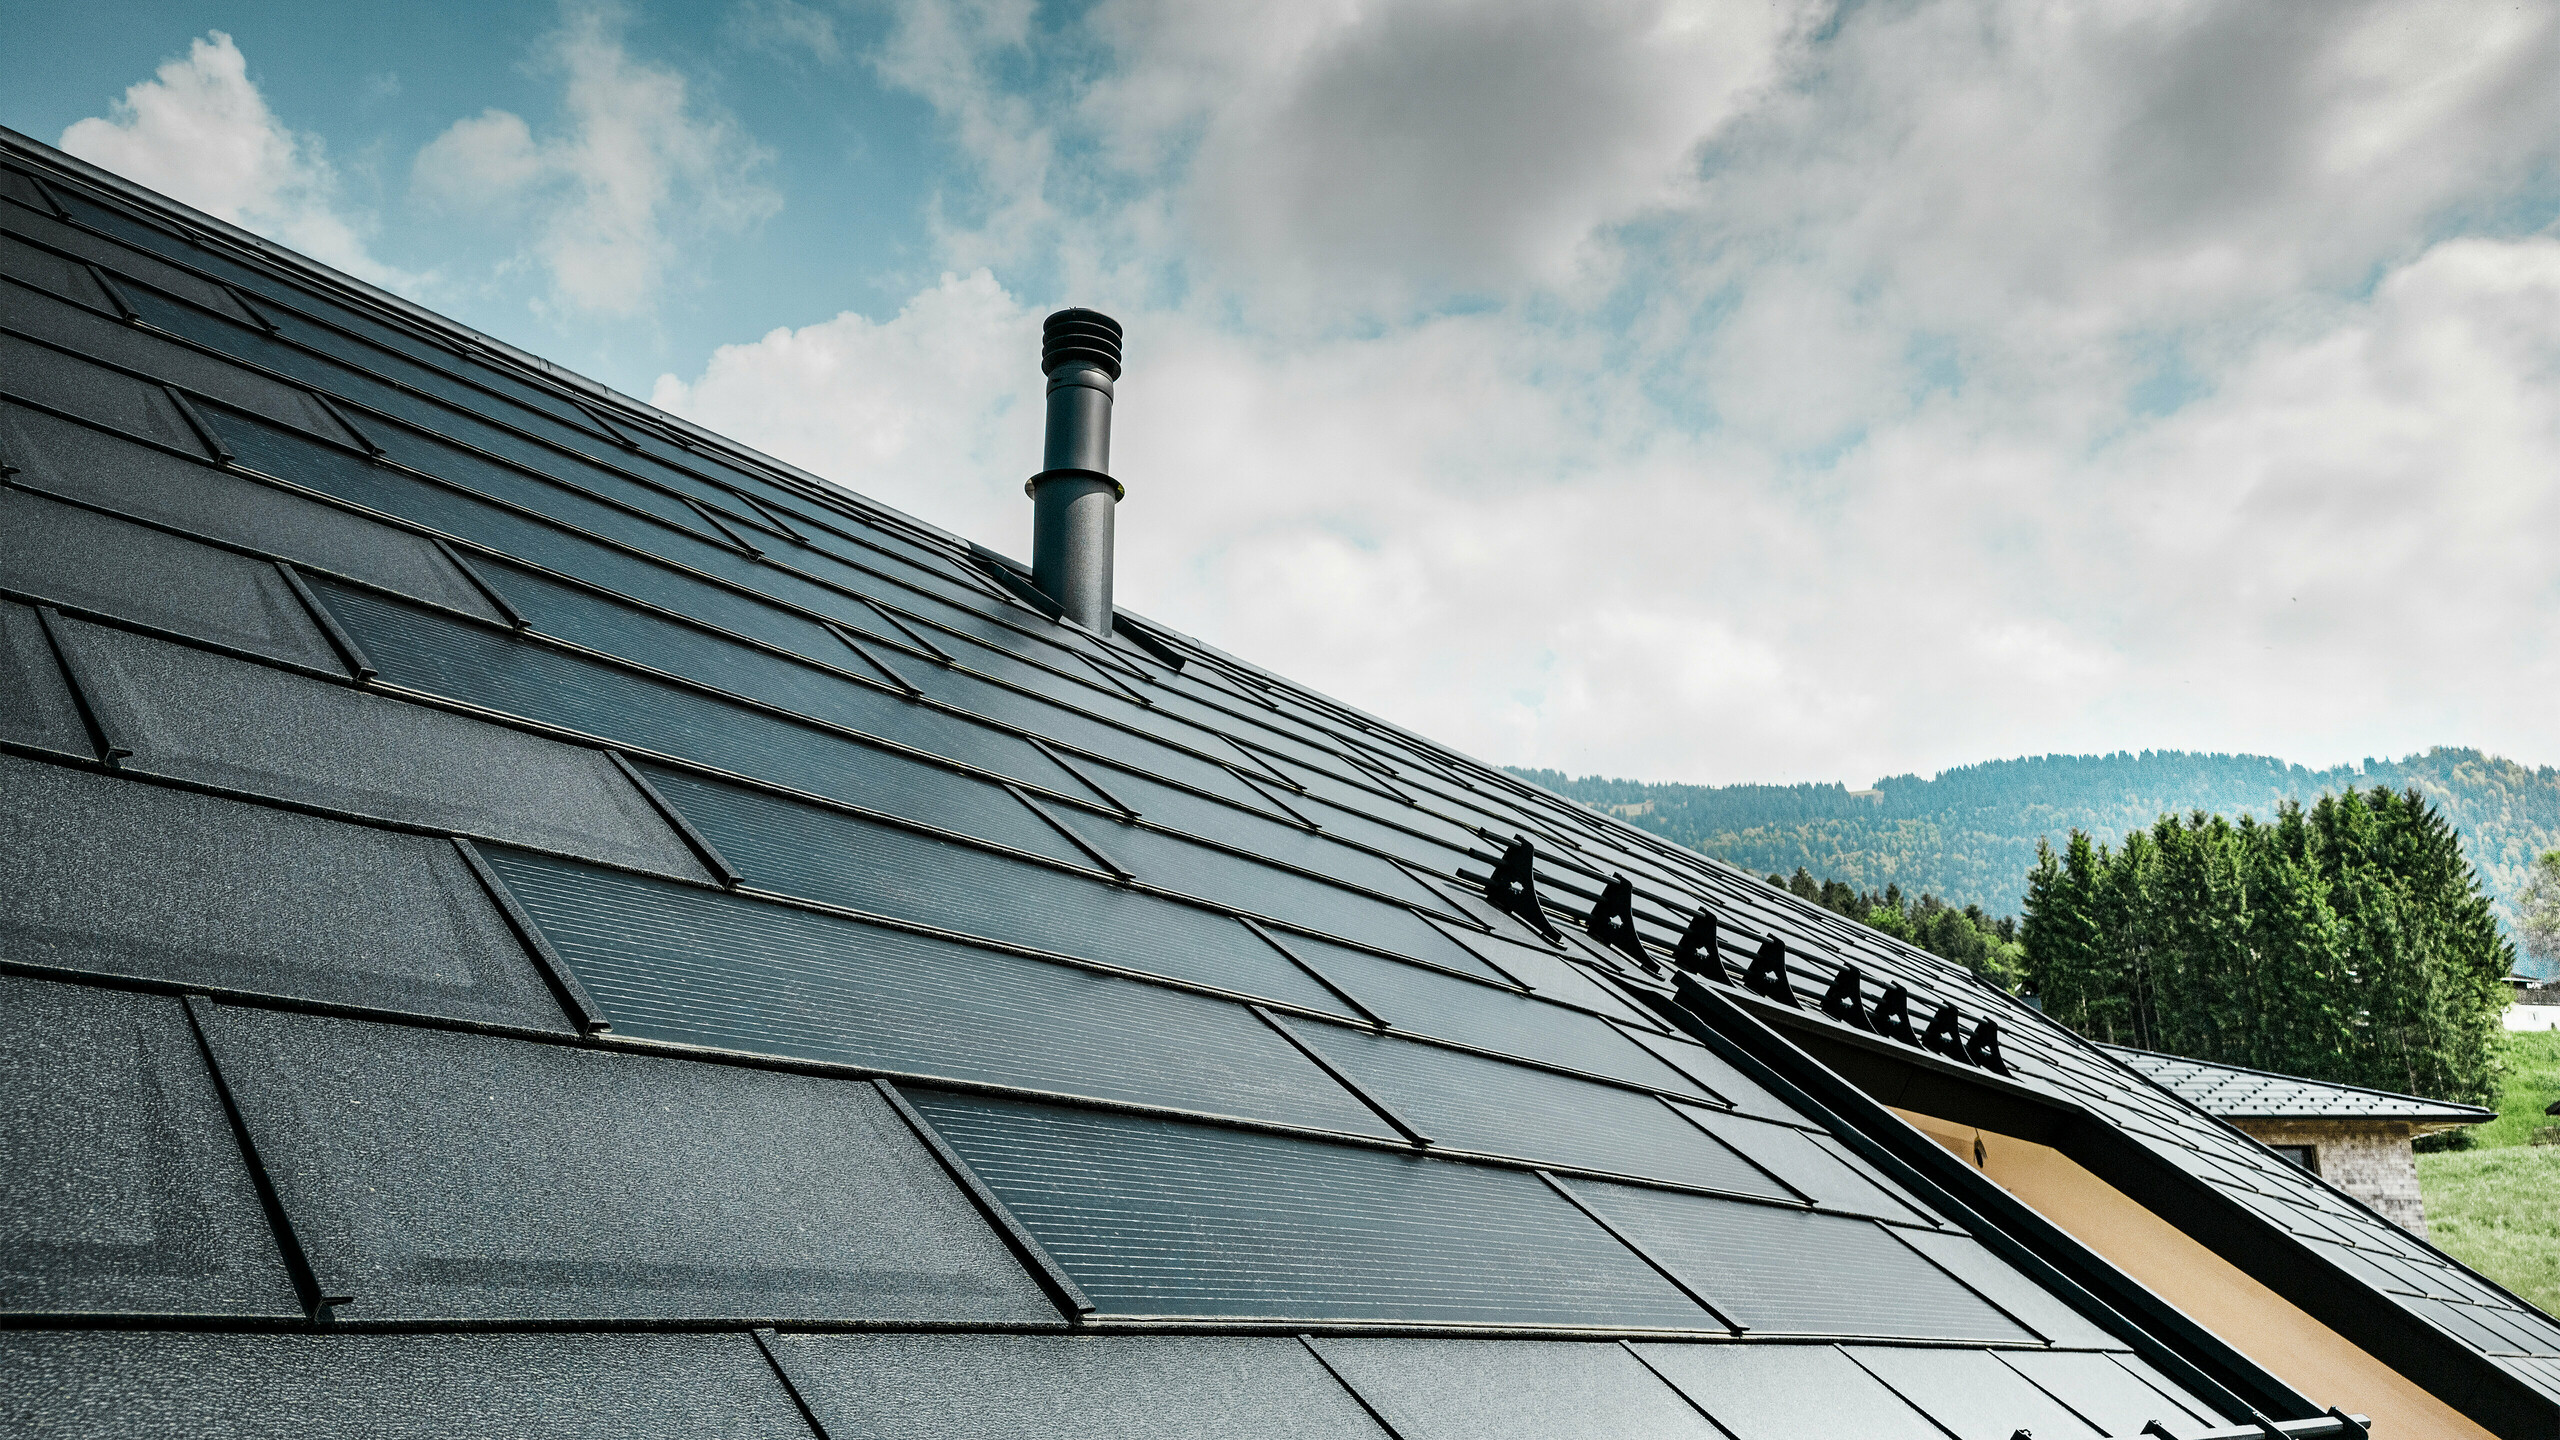 Vue détaillée de la tuile solaire PREFA combinée avec la tuile R.16 PREFA éprouvée, de couleur noire P.10, sur une maison écologique à Egg, en Autriche. Les modules photovoltaïques intégrés montrent l'alliance parfaite entre l'énergie renouvelable et un design de toit sophistiqué. Les plaques de toit noires R.16 avec le système de protection contre la neige complètent la surface esthétique du toit et assurent en outre la sécurité.